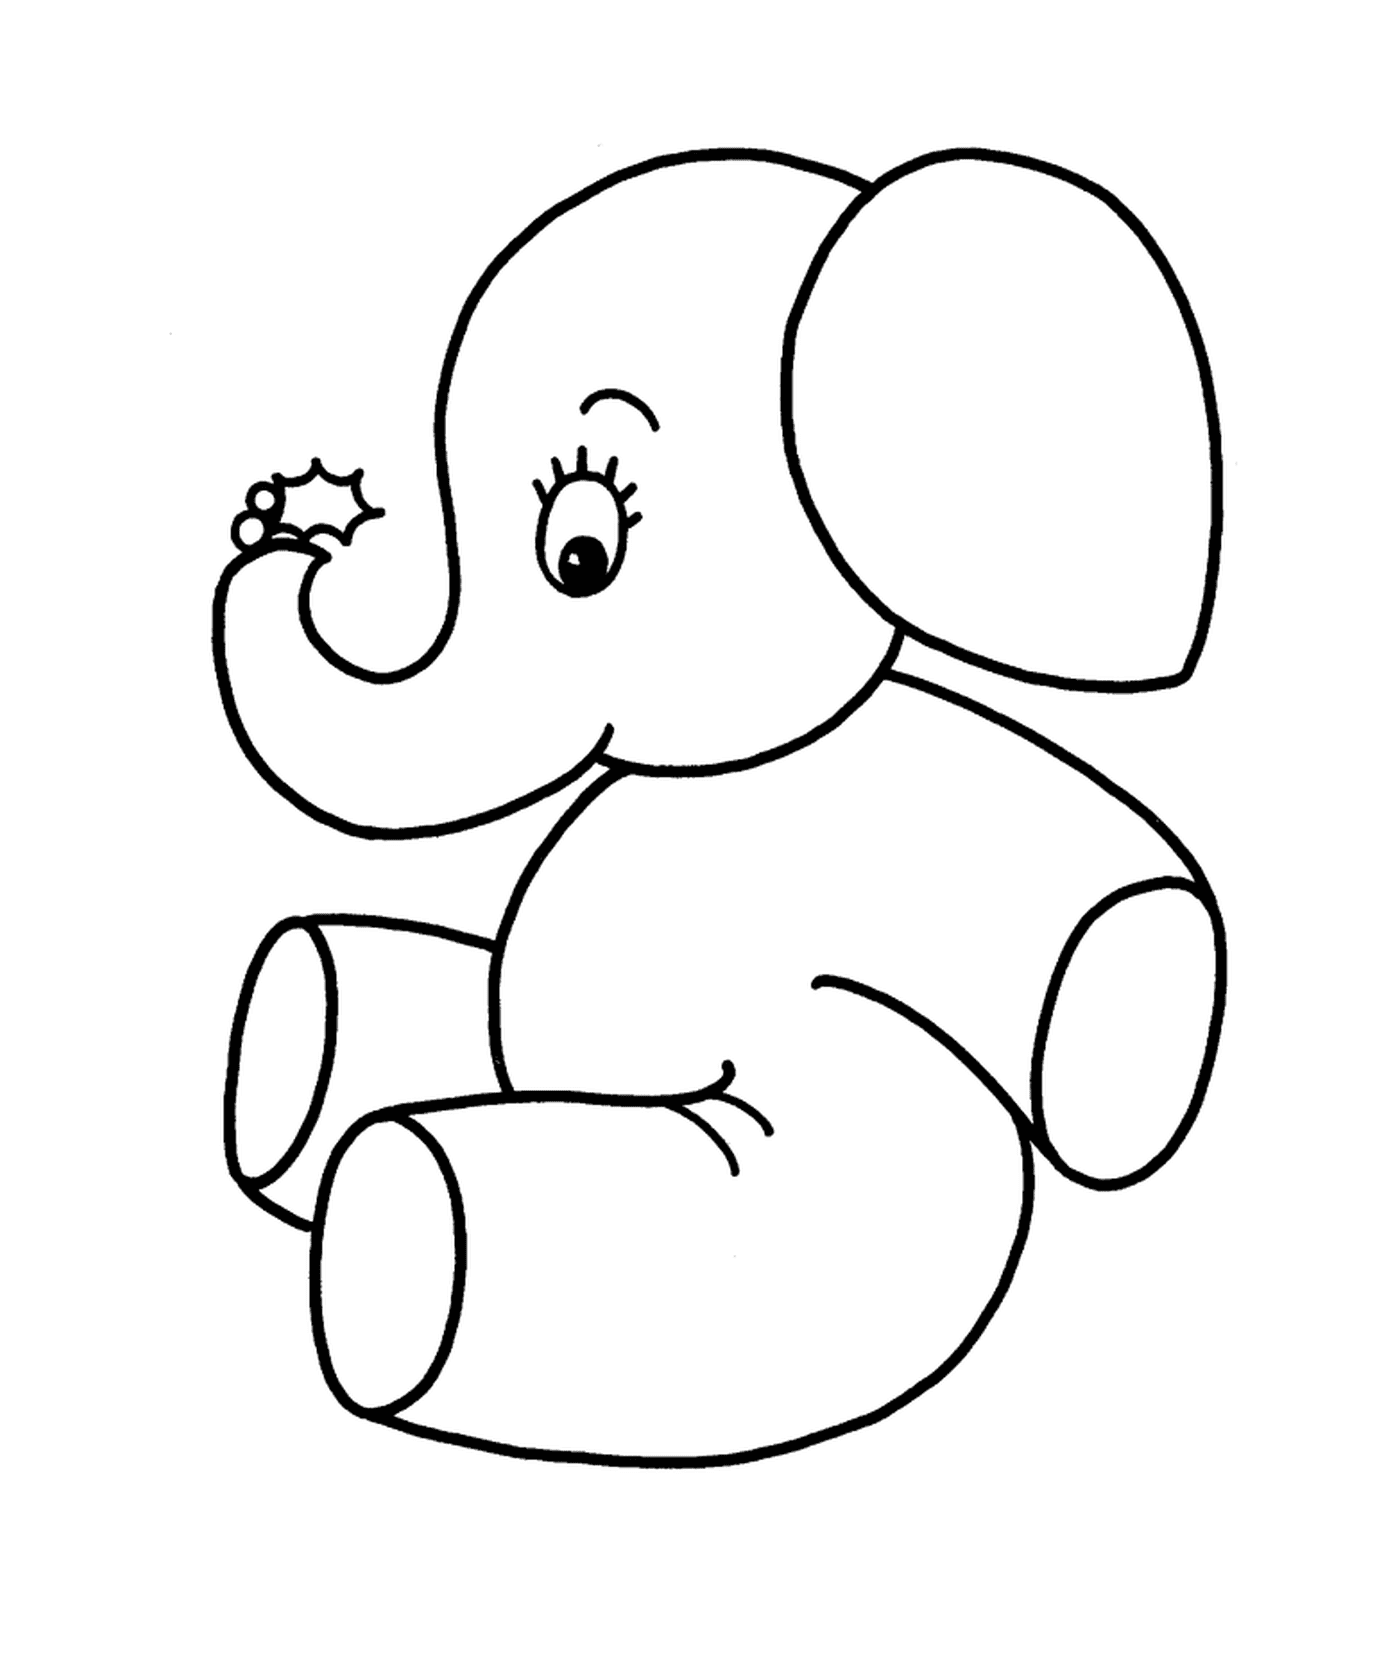  Un elefante seduto 